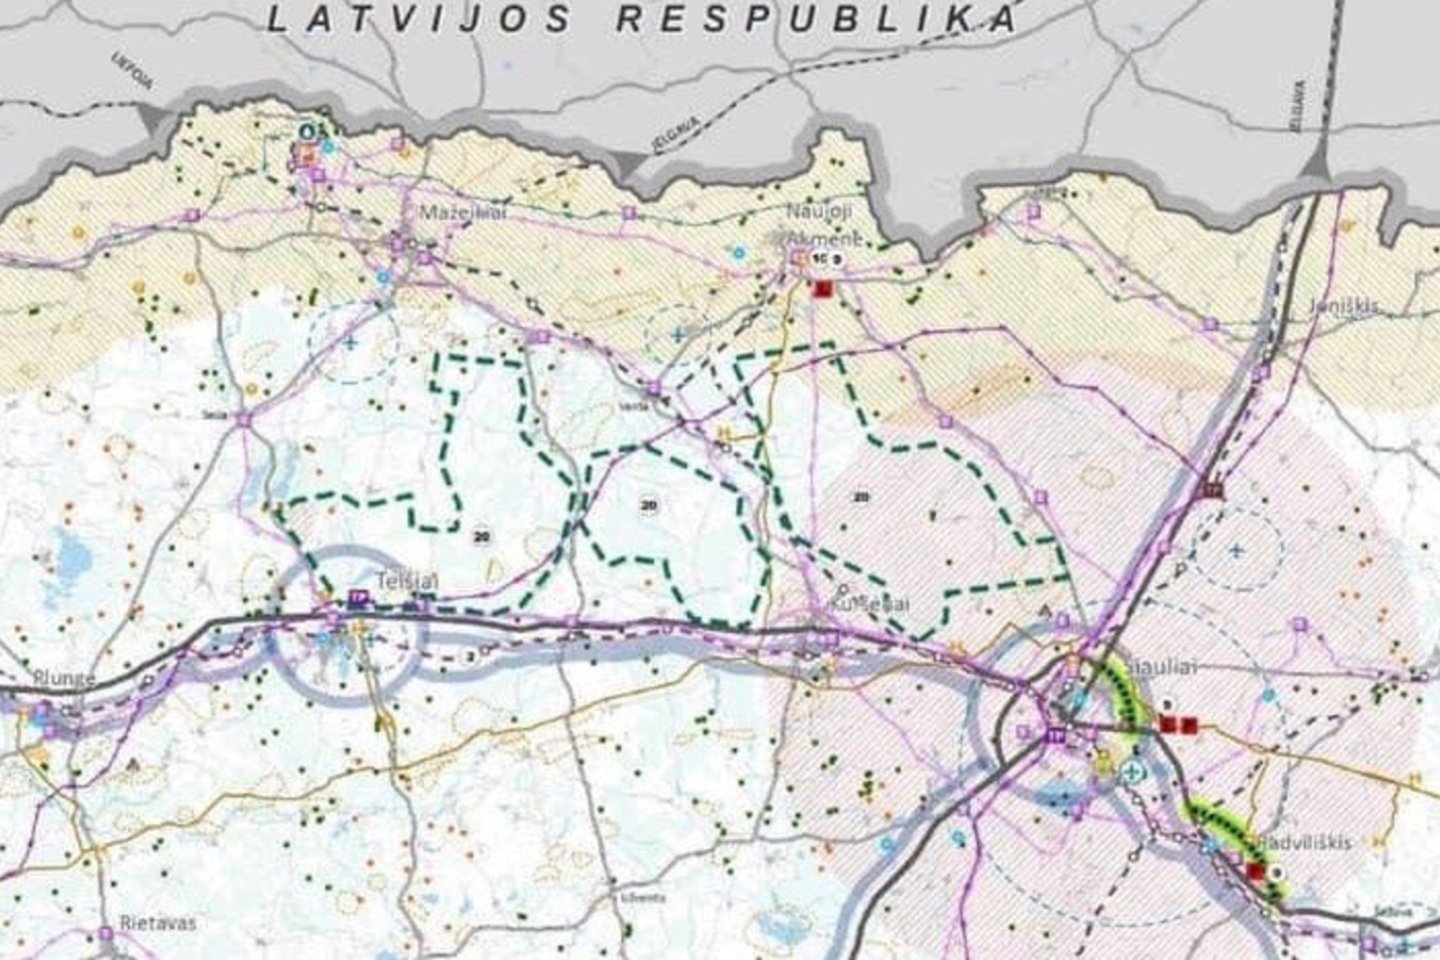 Būsimam poligonui rezervuoti žemės plotai pažymėti Lietuvos Respublikos bendrajame plane spalio 3 dieną.<br> LR bendrojo plano nuotr.